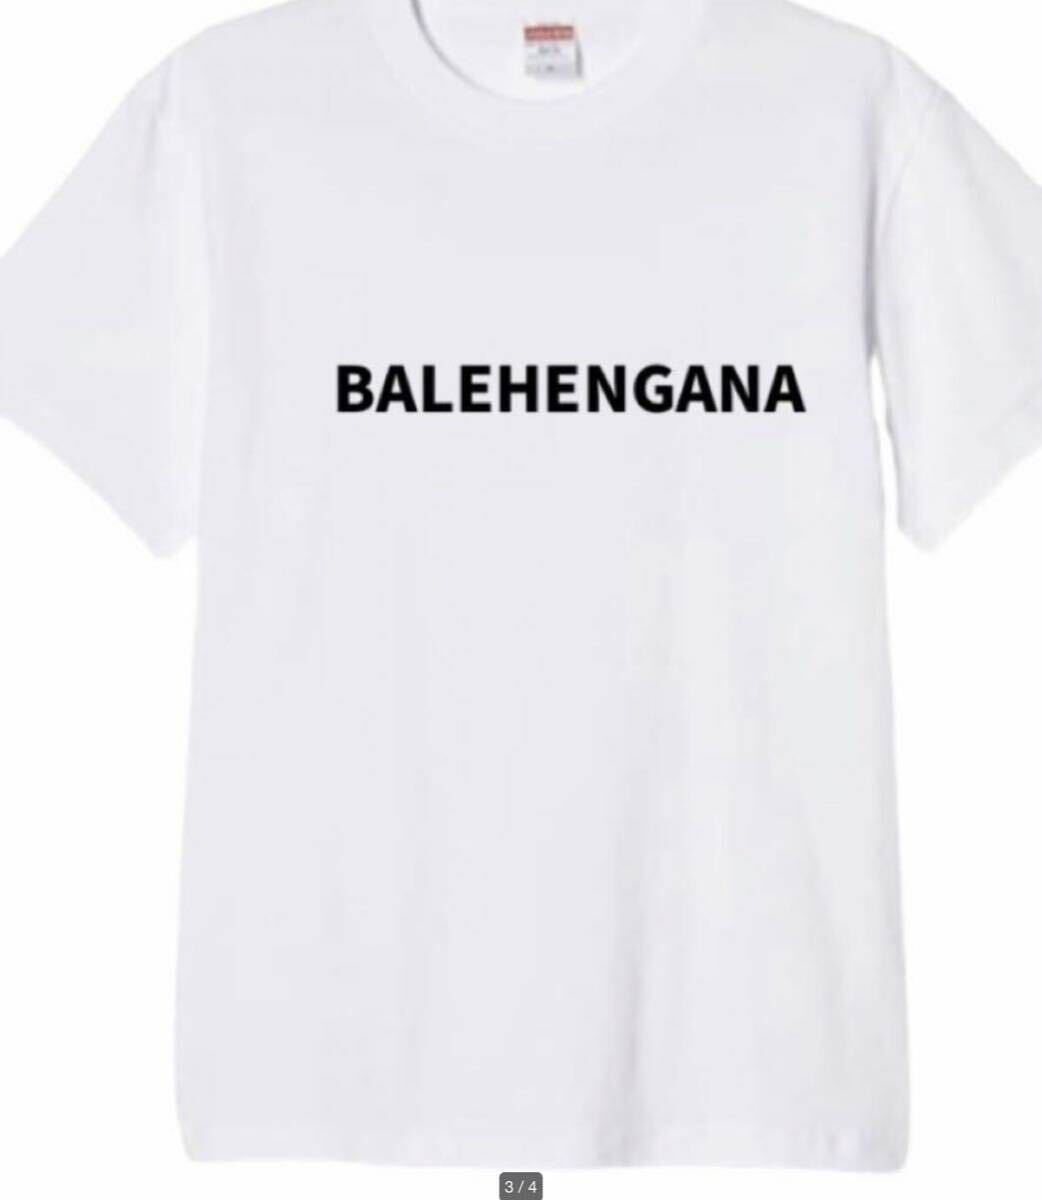 【送料込み】BALEHENGANAサイズ 白Lサイズ Tシャツ ネタT おもしろ 大阪名物 なんでやねん ギャグ ネタ ウケ狙い パロディ ブランド